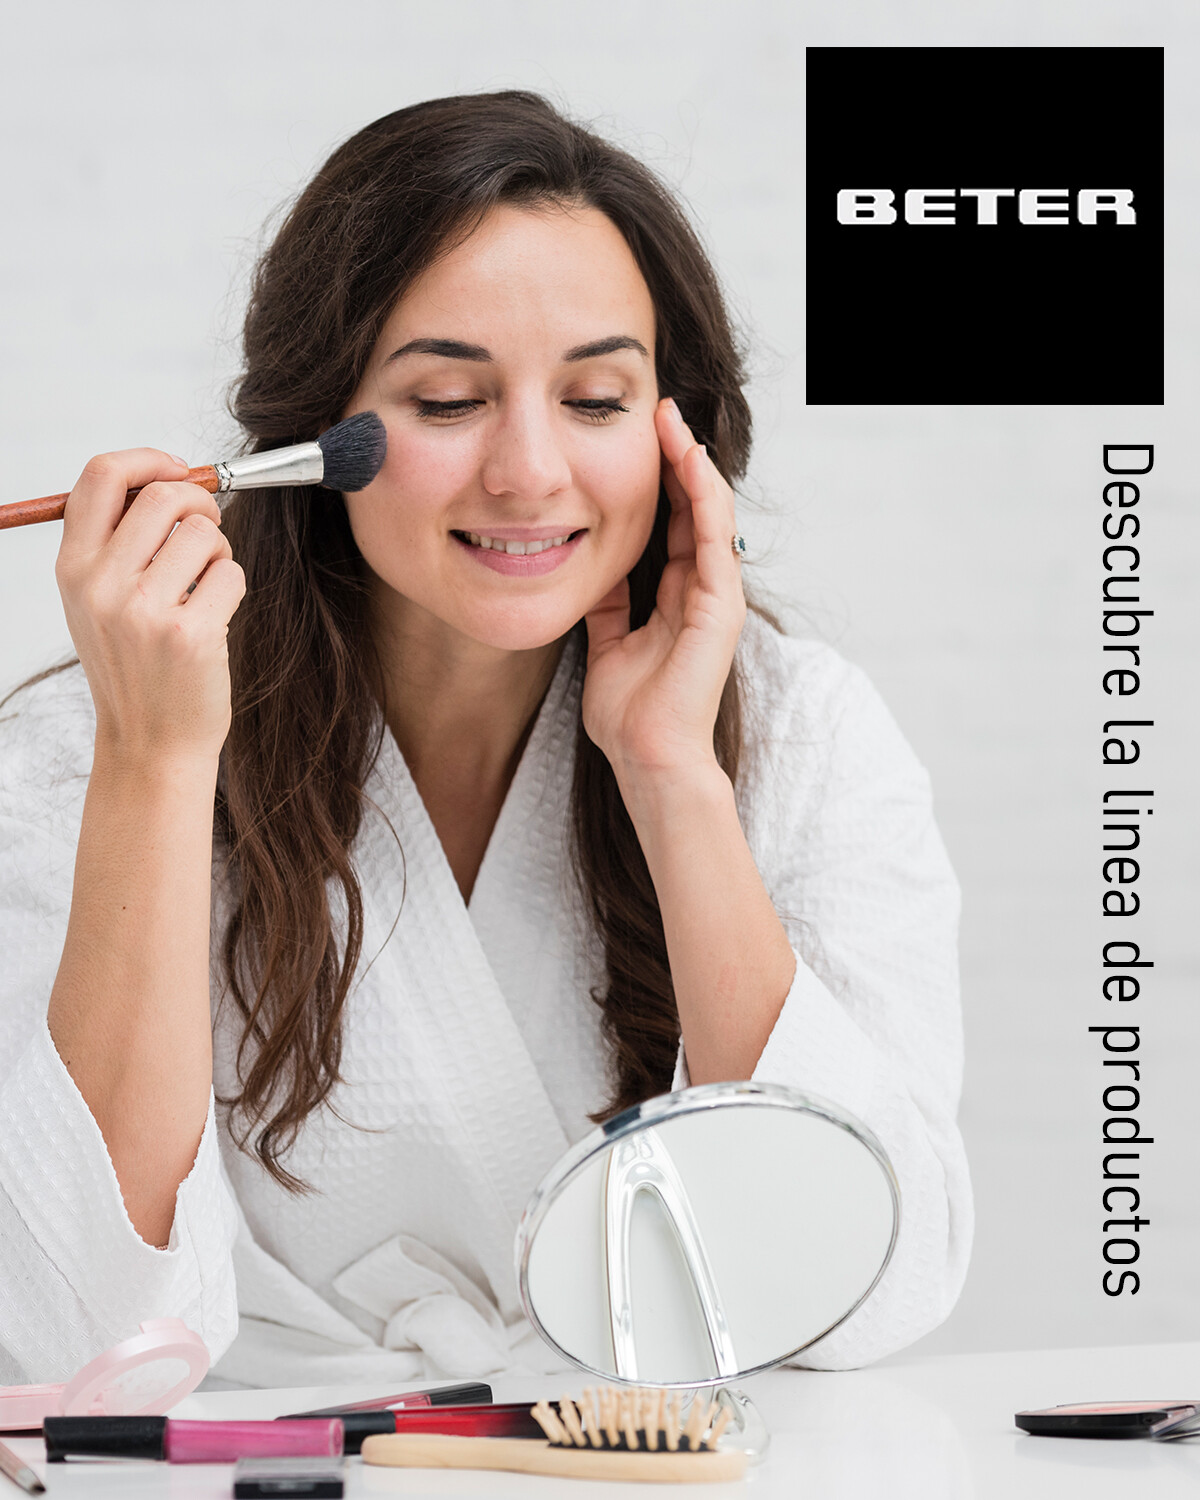 Spray Beter limpiador de brochas y pinceles de maquillaje — Electroventas